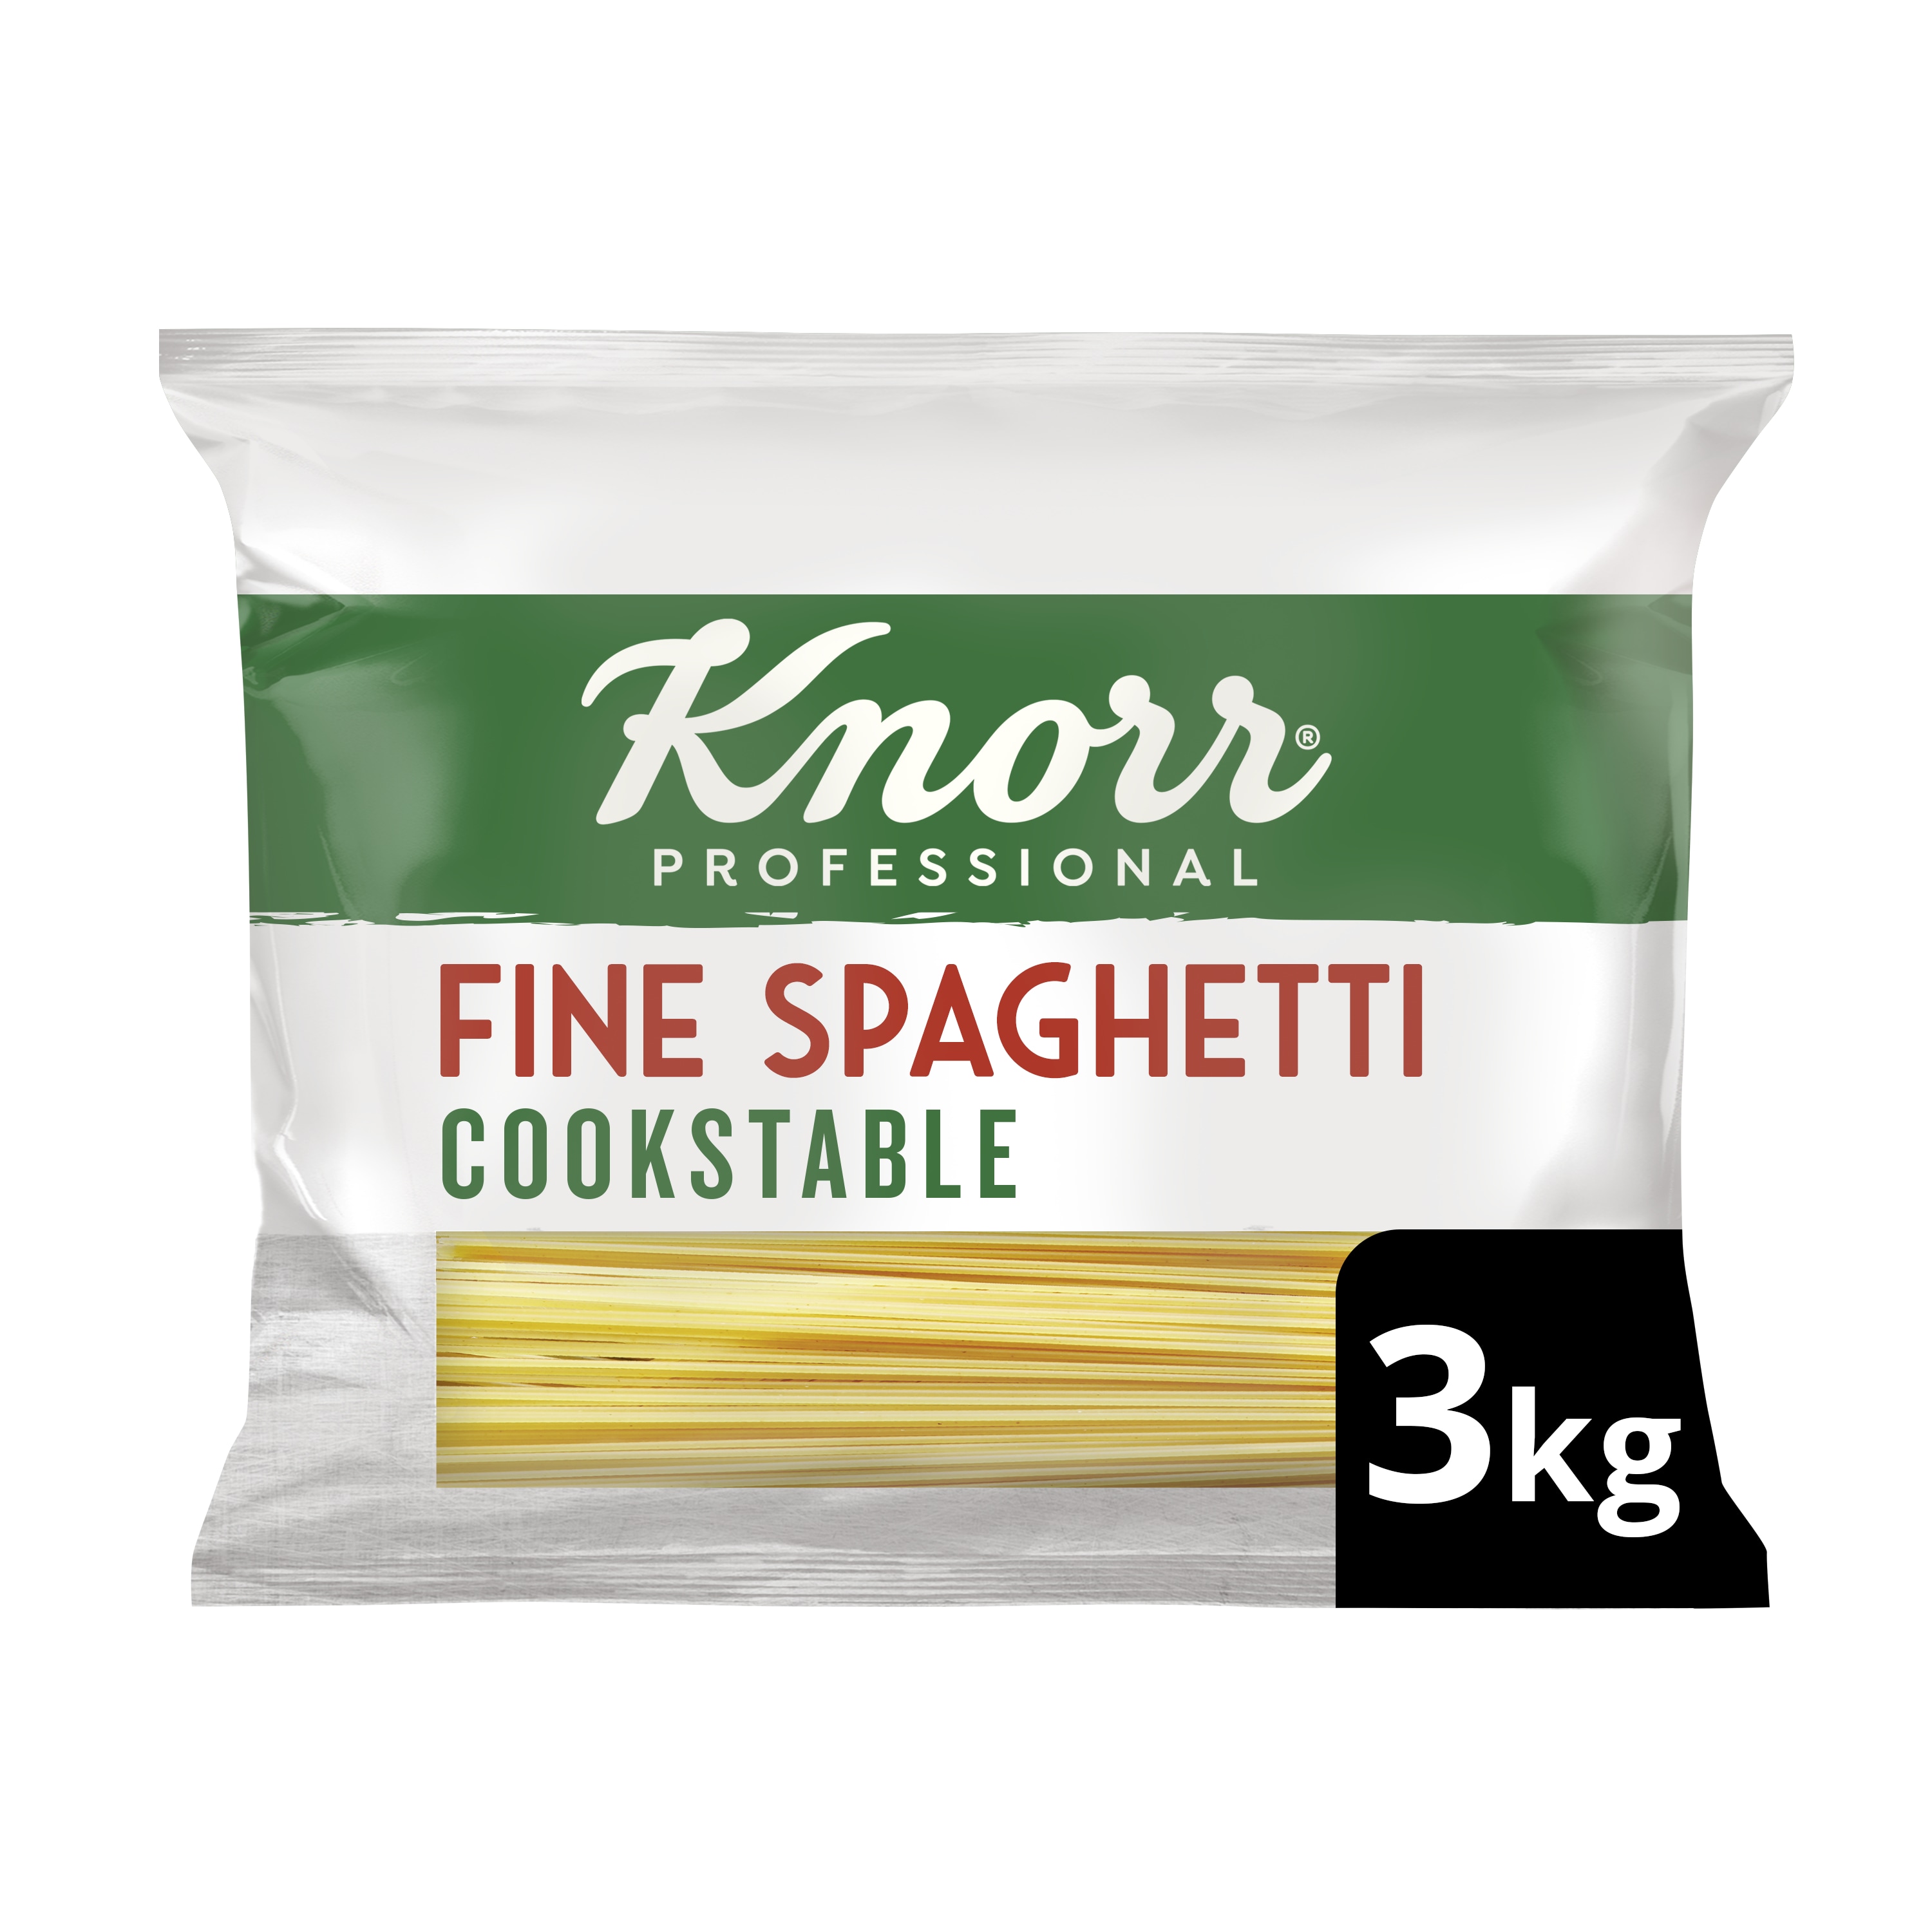 Knorr ProfessionalItaliana Fijne Spaghetti Kookstabiel 3kg - 